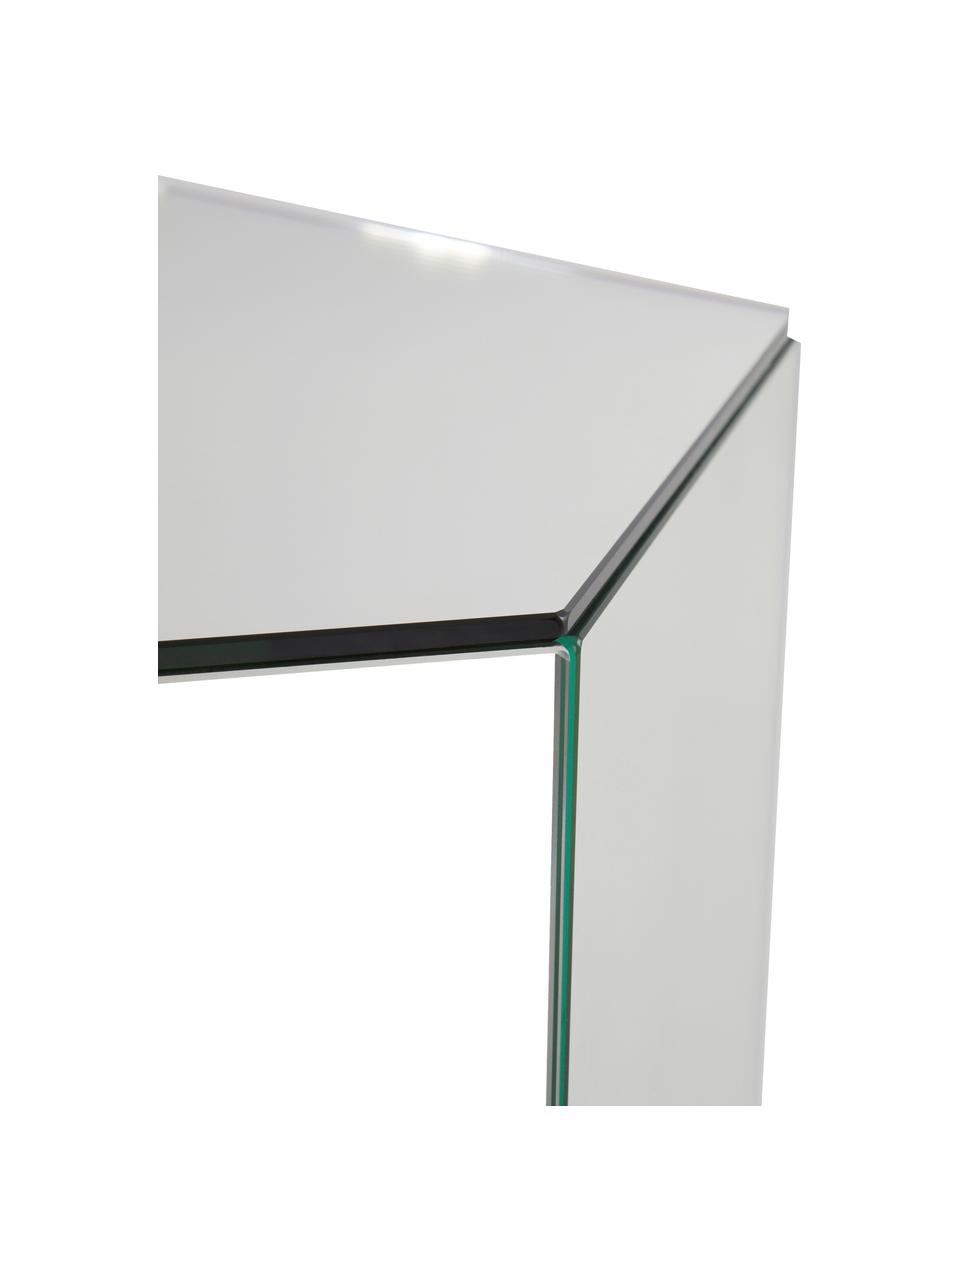 Skleněný odkládací stolek se zrcadlovým efektem Scrape, MDF deska (dřevovláknitá deska střední hustoty), zrcadlo, Zrcadlové sklo, Š 40 cm, V 60 cm